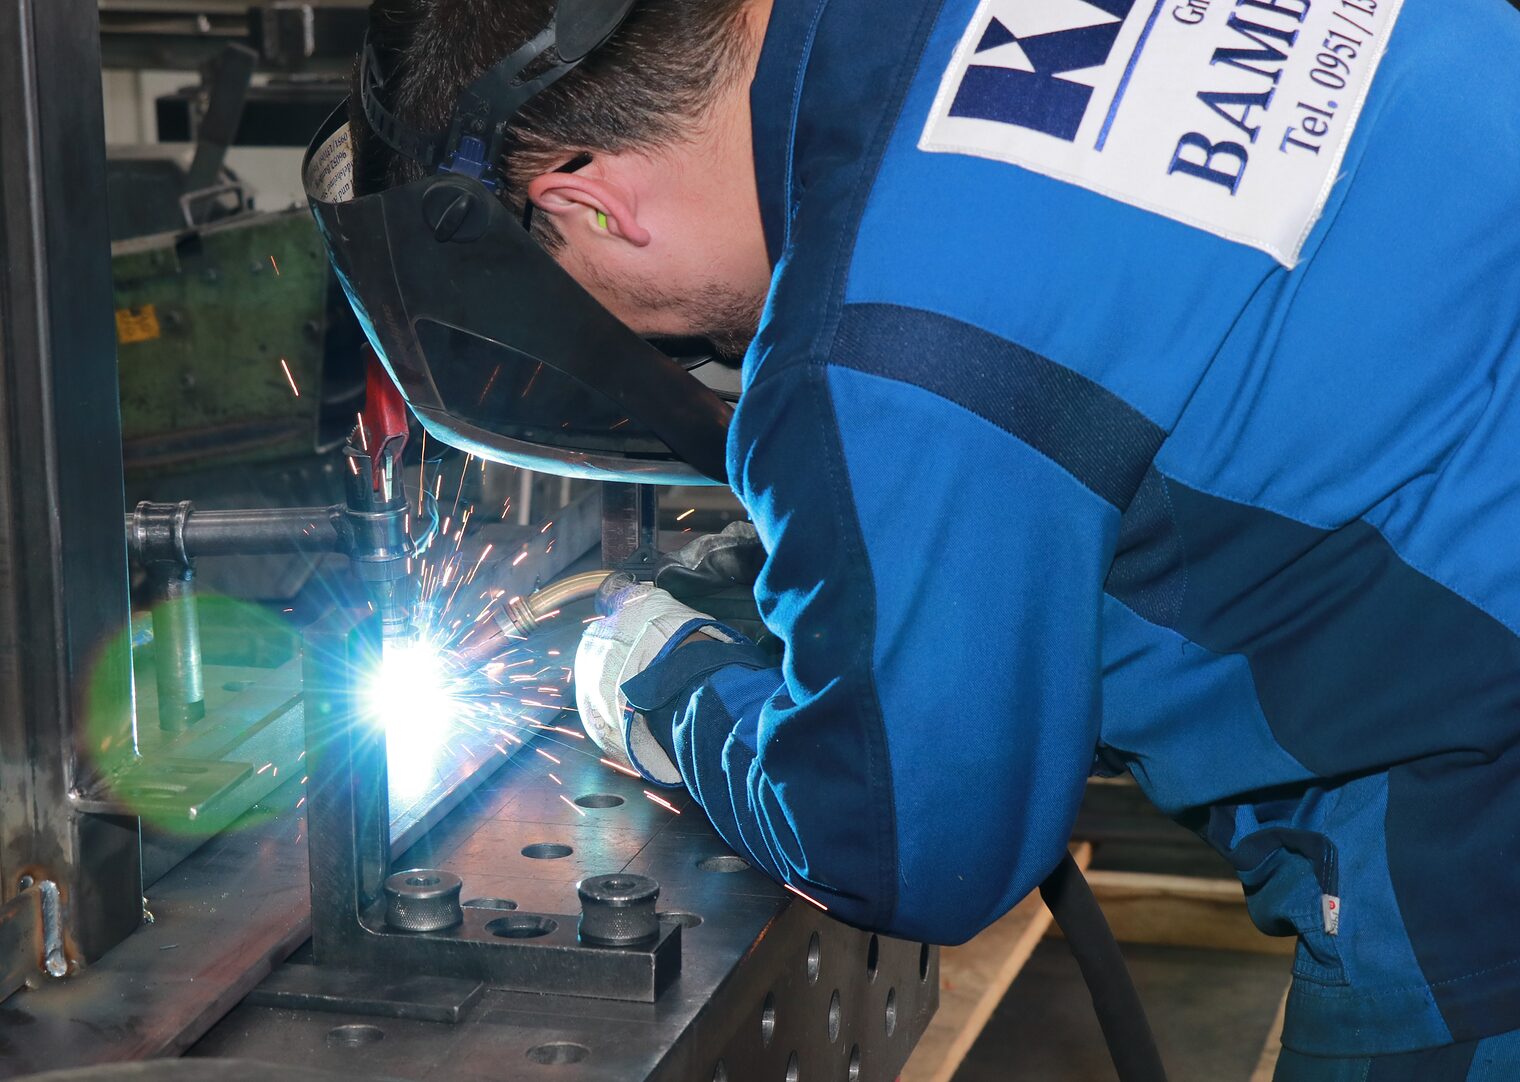 Individuelle Anfertigungen nach Kundenwunsch sind die Stärken der KA Metallbau GmbH aus Bamberg.